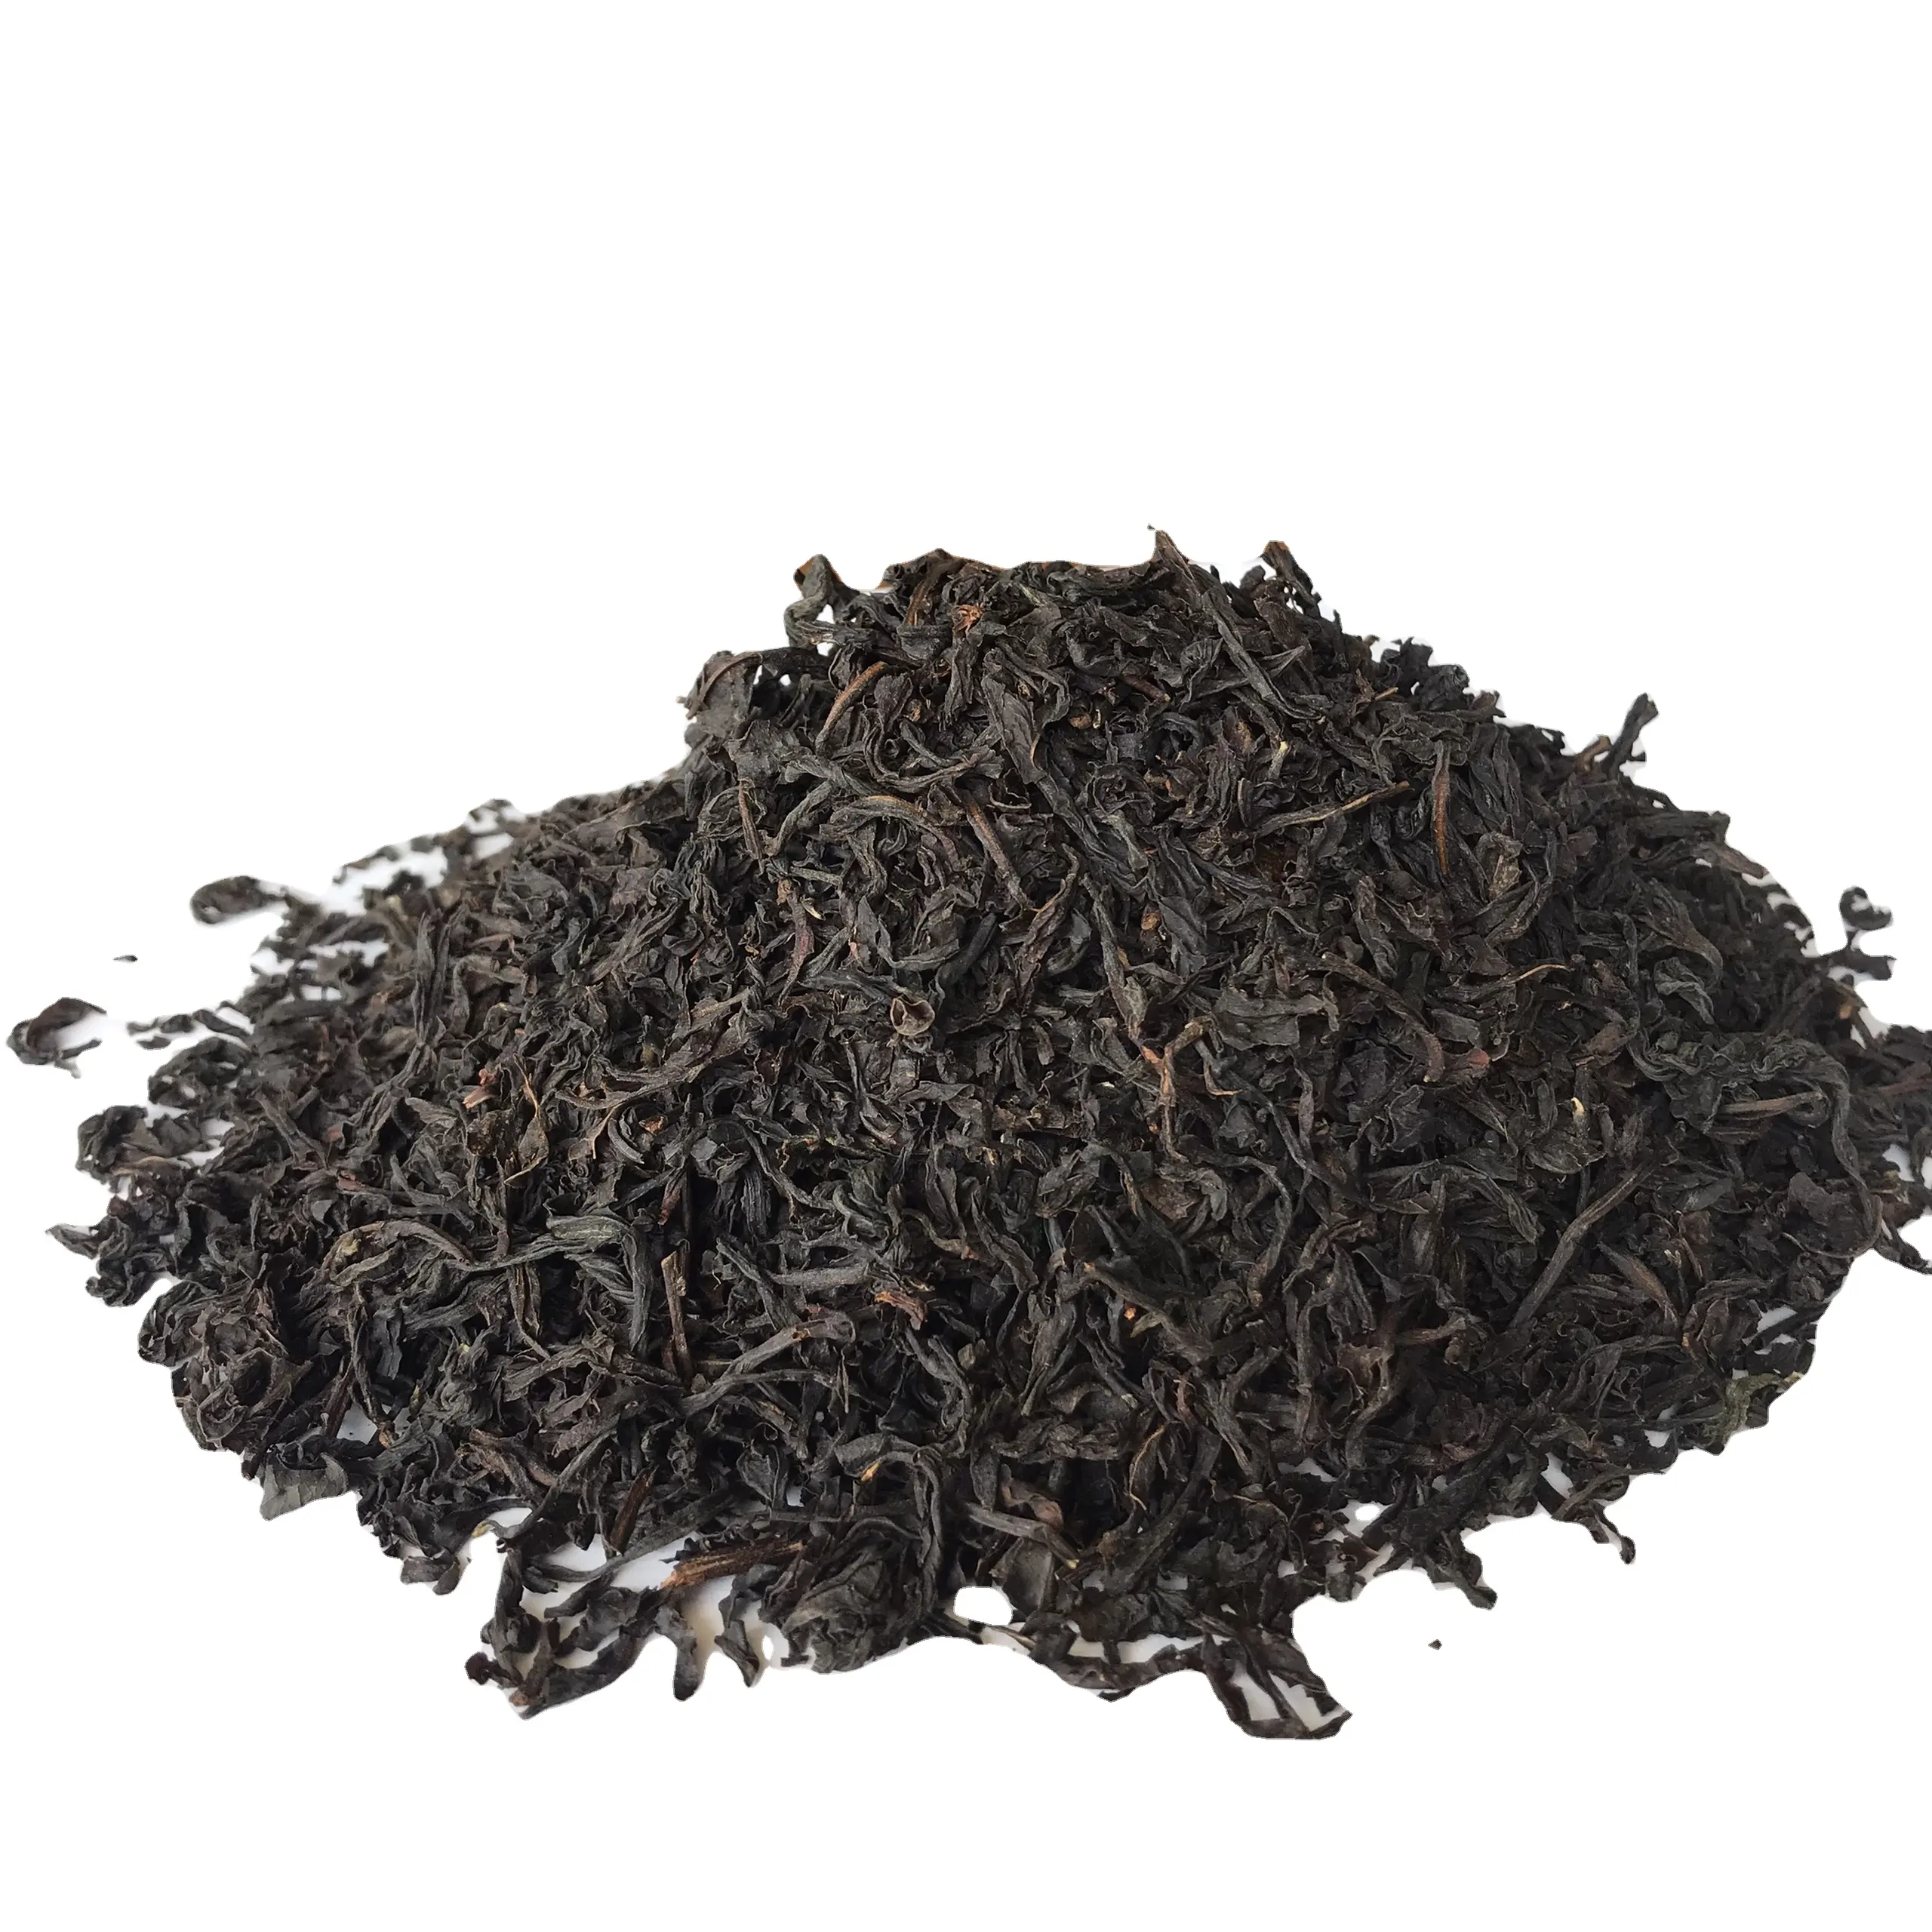 וייטנאמי טהור שחור תה באיכות טובה בסדר וריחני מפעל אספקת הטוב ביותר באיכות מיידי שחור Te